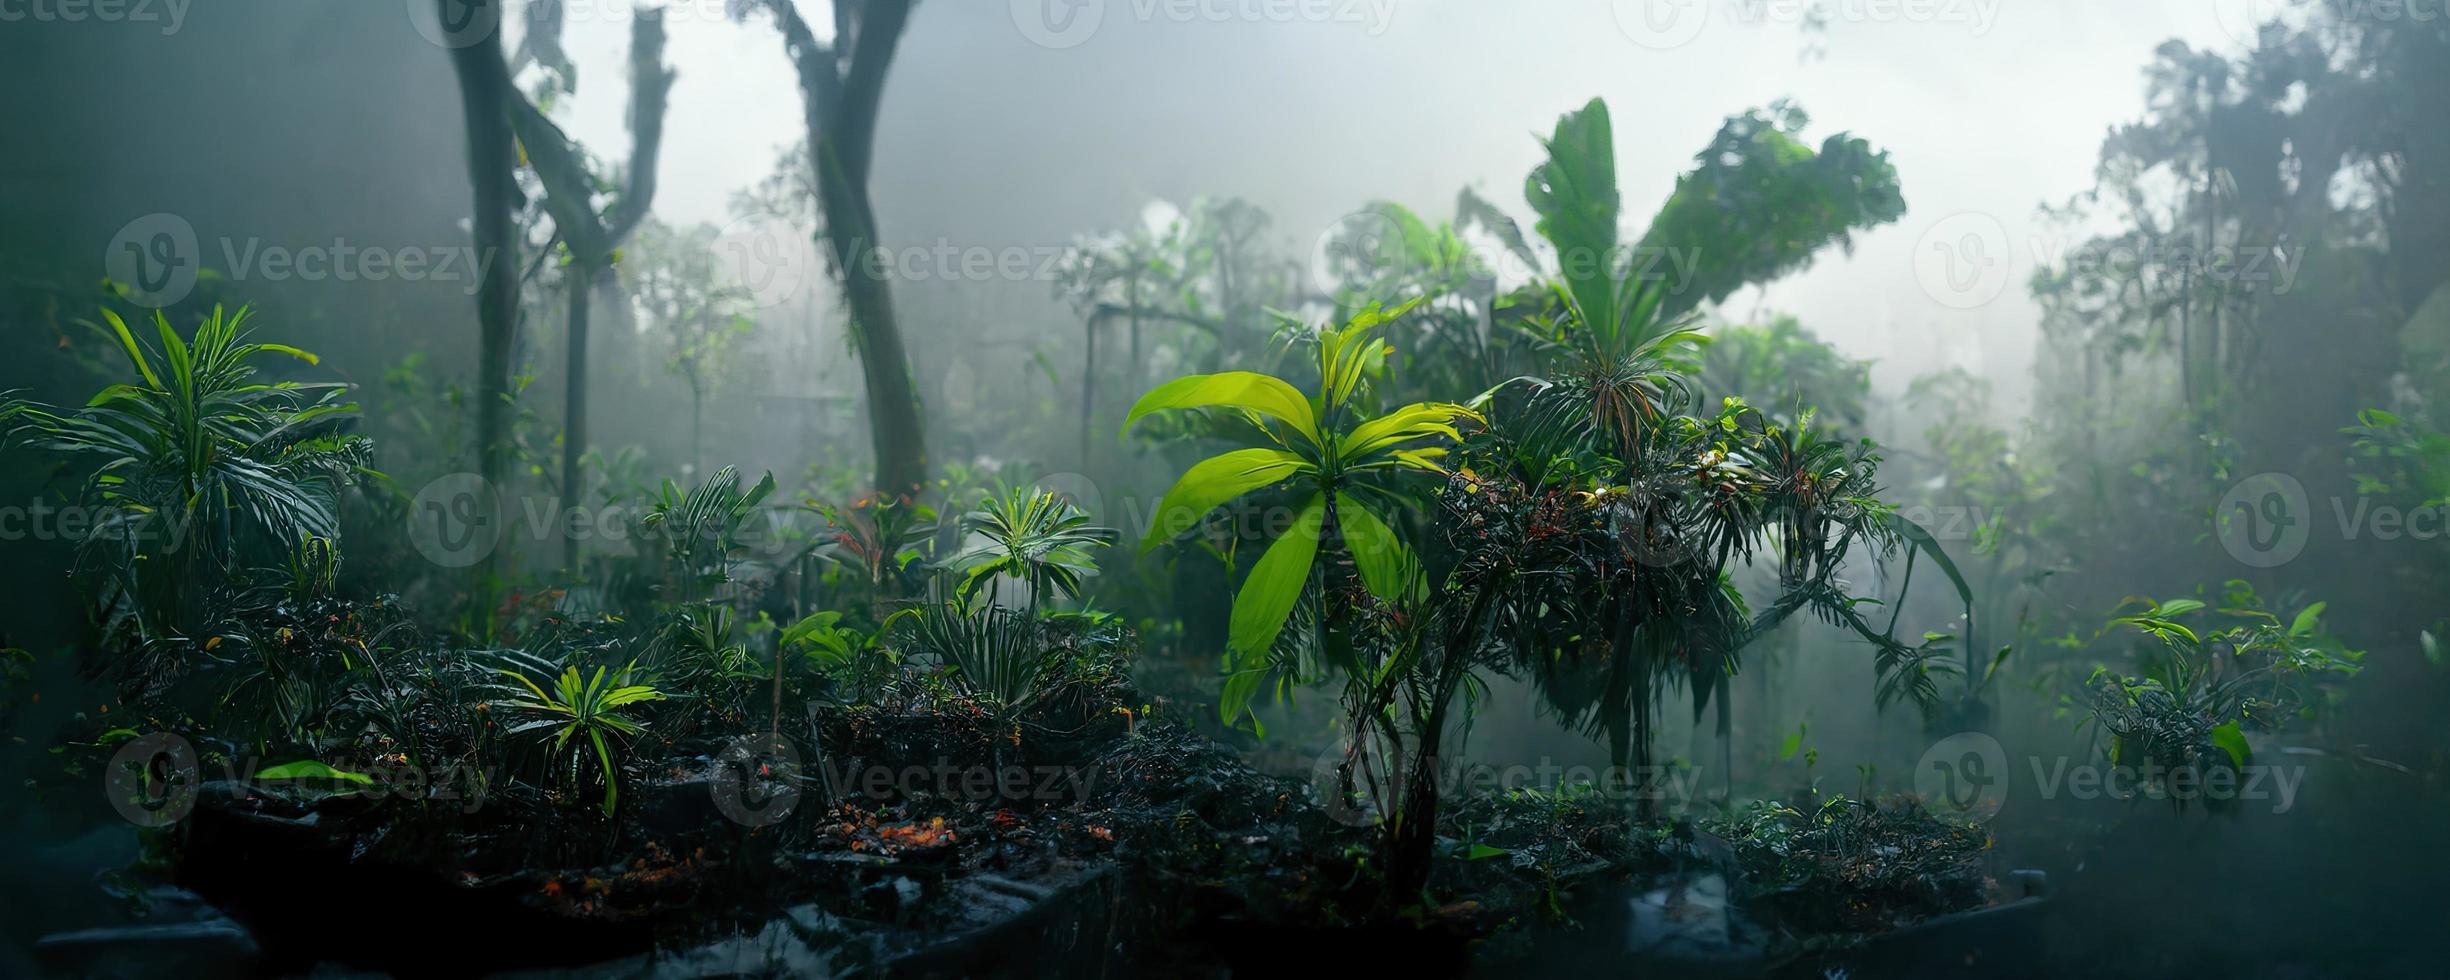 mistig donker exotisch tropisch oerwoud illustratie ontwerp foto